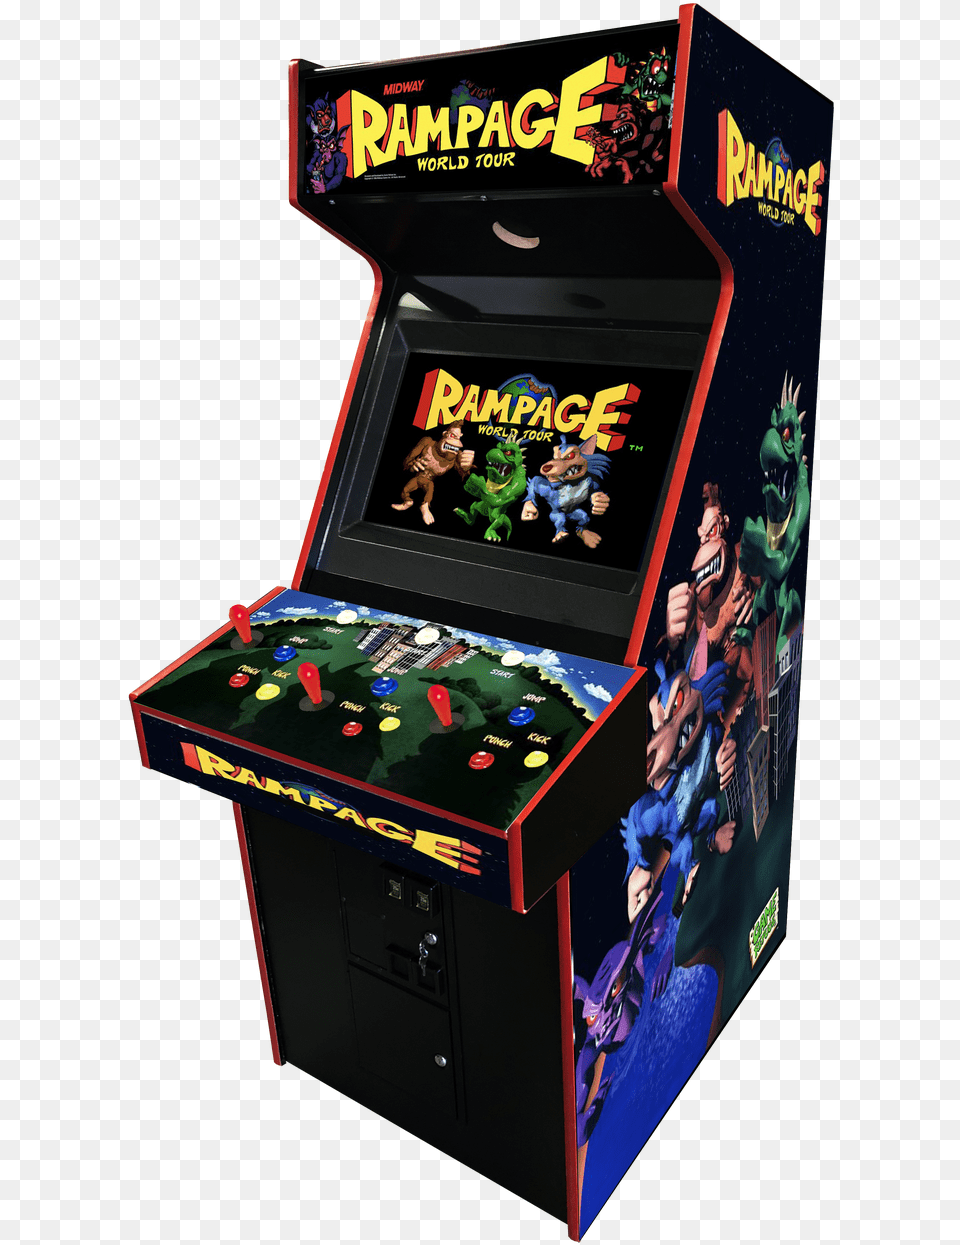 Rampage World Tour Arcade Video Game Mortal Kombat 2 Arcade Machine, Arcade Game Machine, Person Png Image